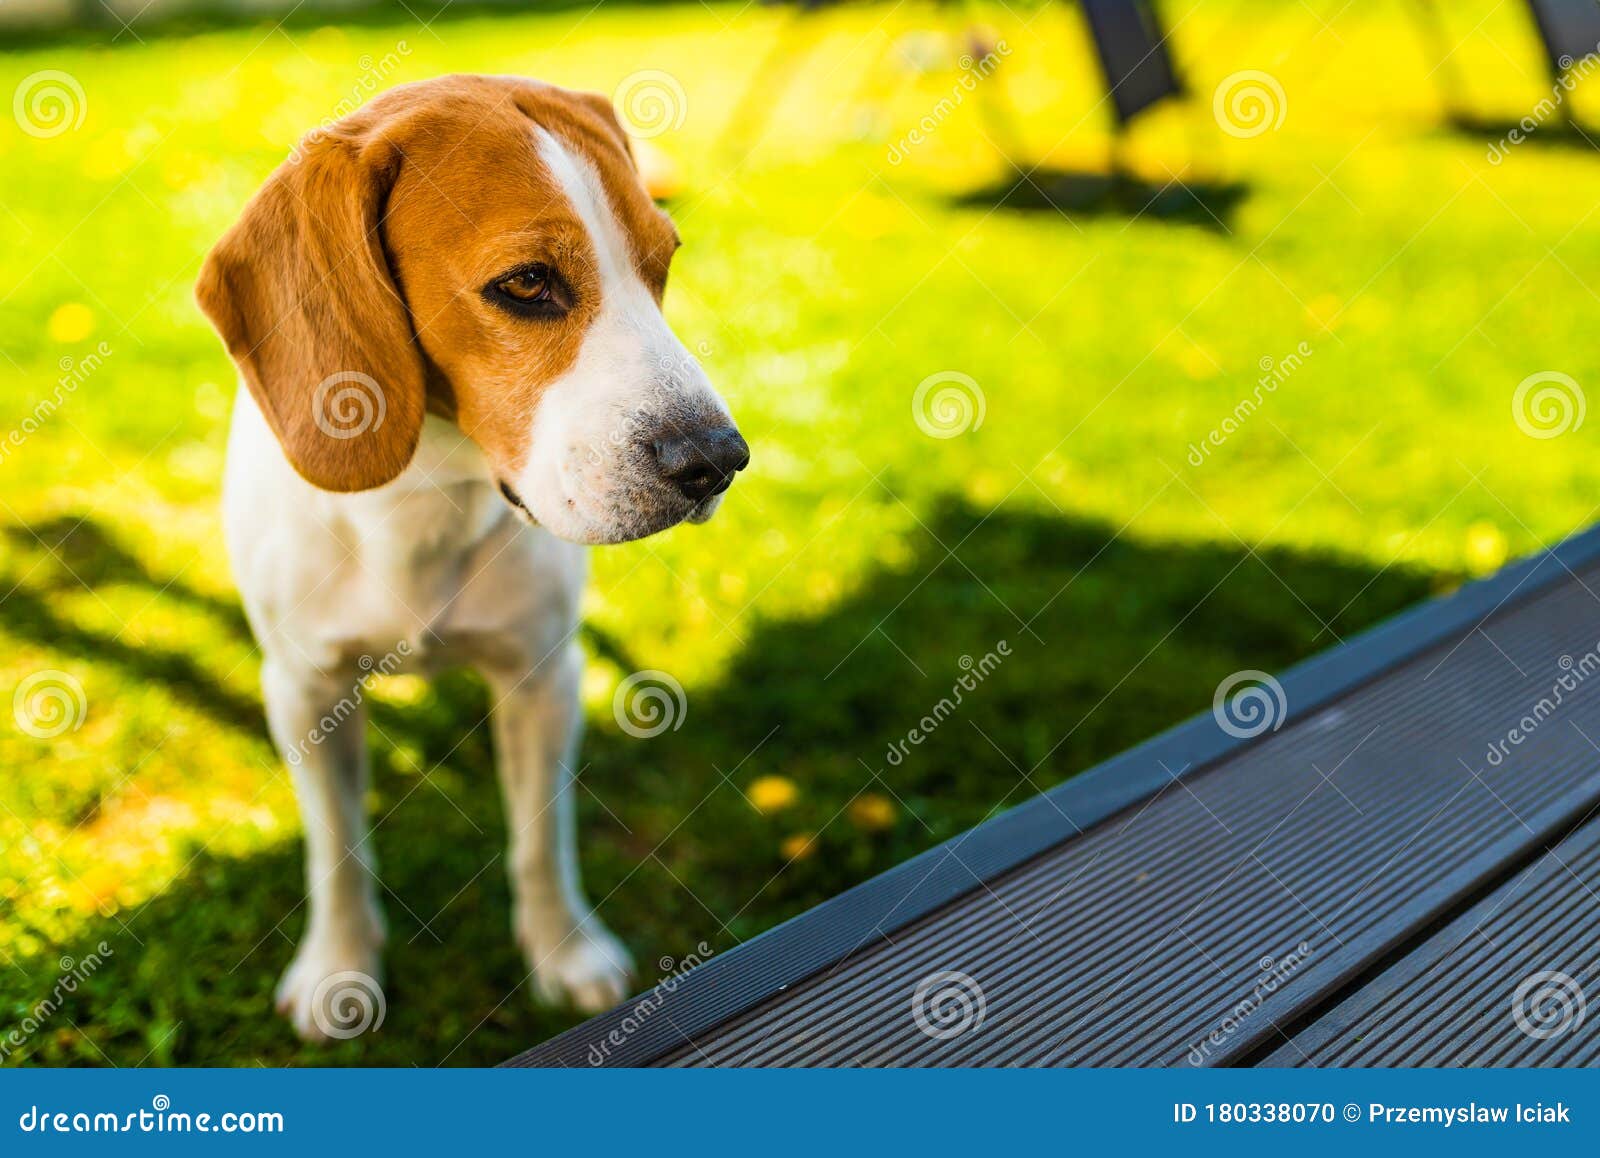 阳光明媚的春日 狗特写肖像比格犬背景库存照片 图片包括有草原 逗人喜爱 复制 似犬 绿色